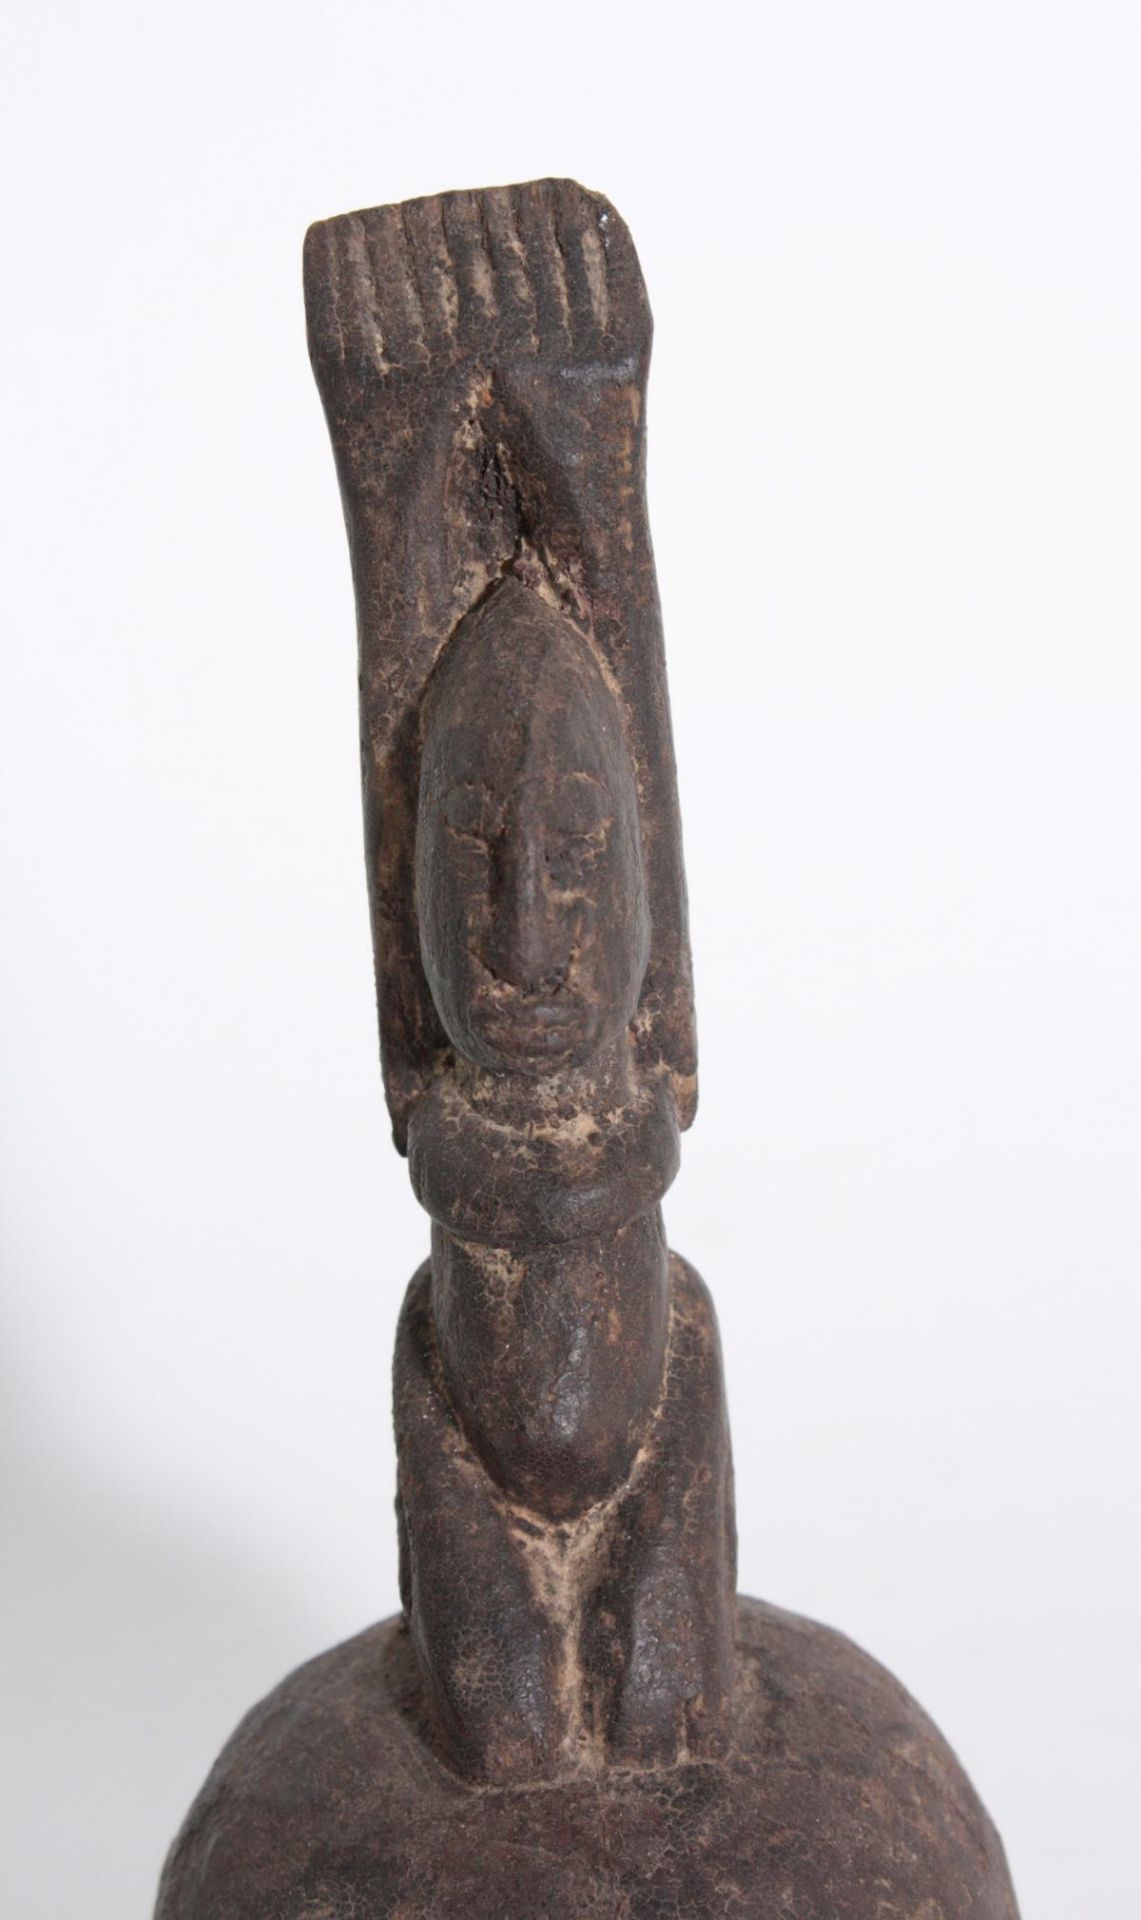 Kleines Ölgefäß, Dogon, Mali, 1. Hälfte 20. Jh.Holz geschnitzt, starke dunkelbraune Krustenpatina, - Bild 3 aus 3